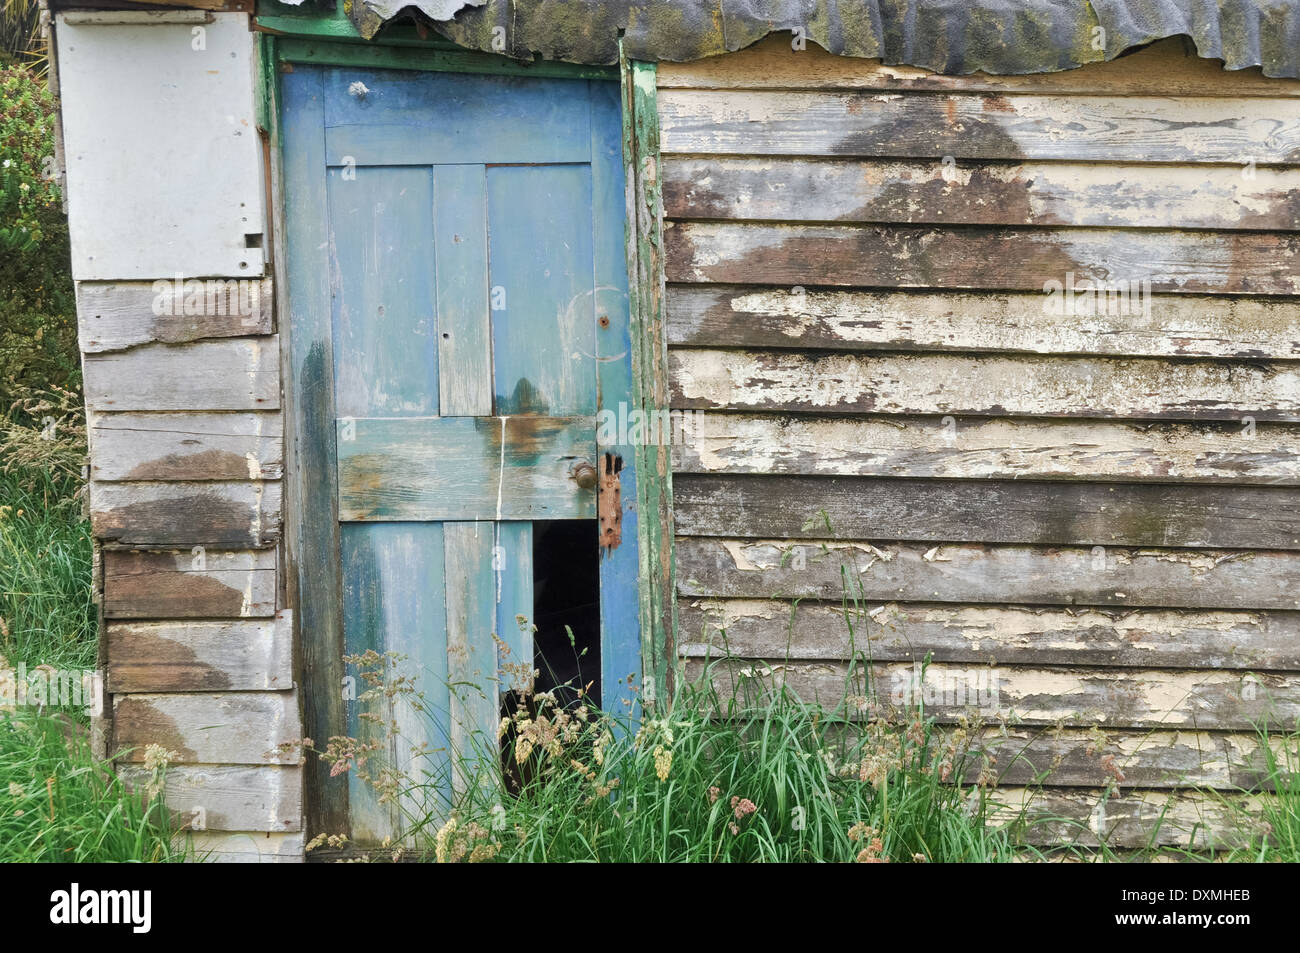 Wooden hut with weathered wooden broken door. Stock Photo